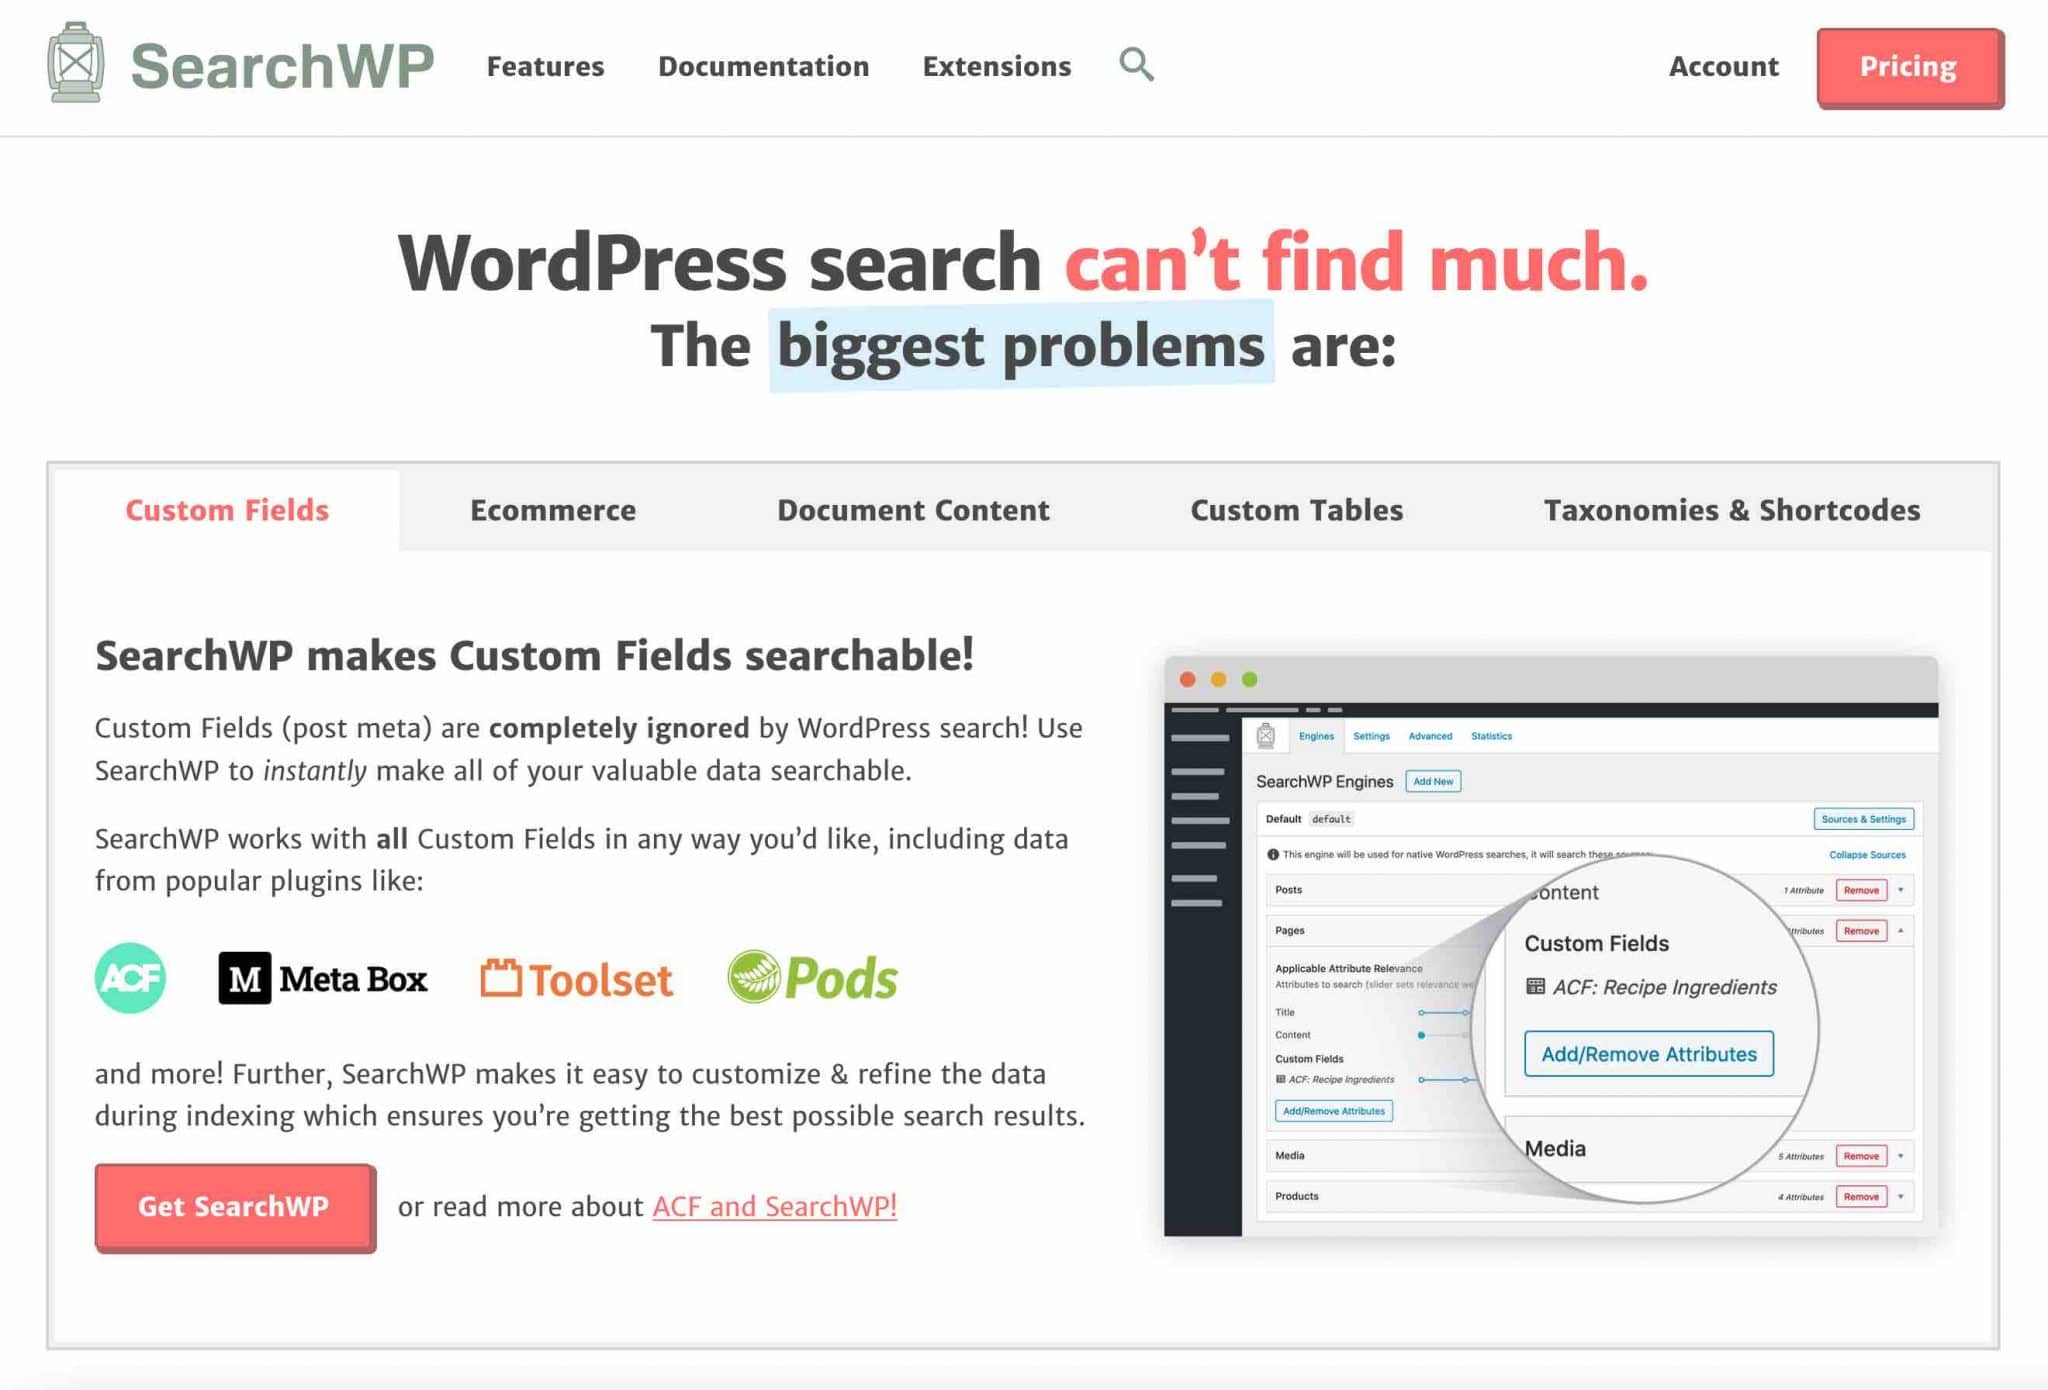 L'extension SearchWP permet d'améliorer la recherche native sur WordPress.